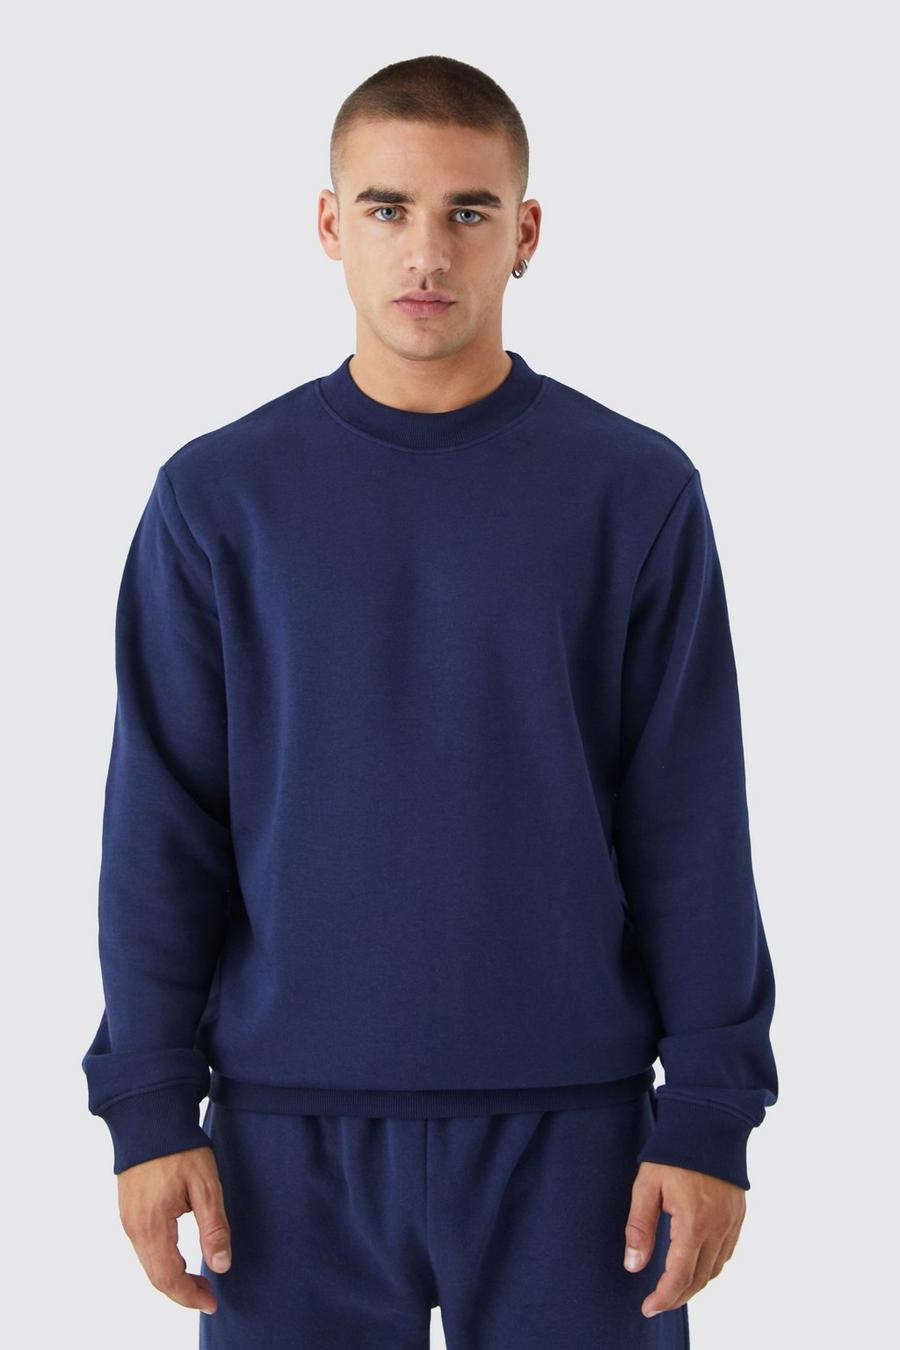 Navy marineblau Basic Extended Neck Sweatshirt  